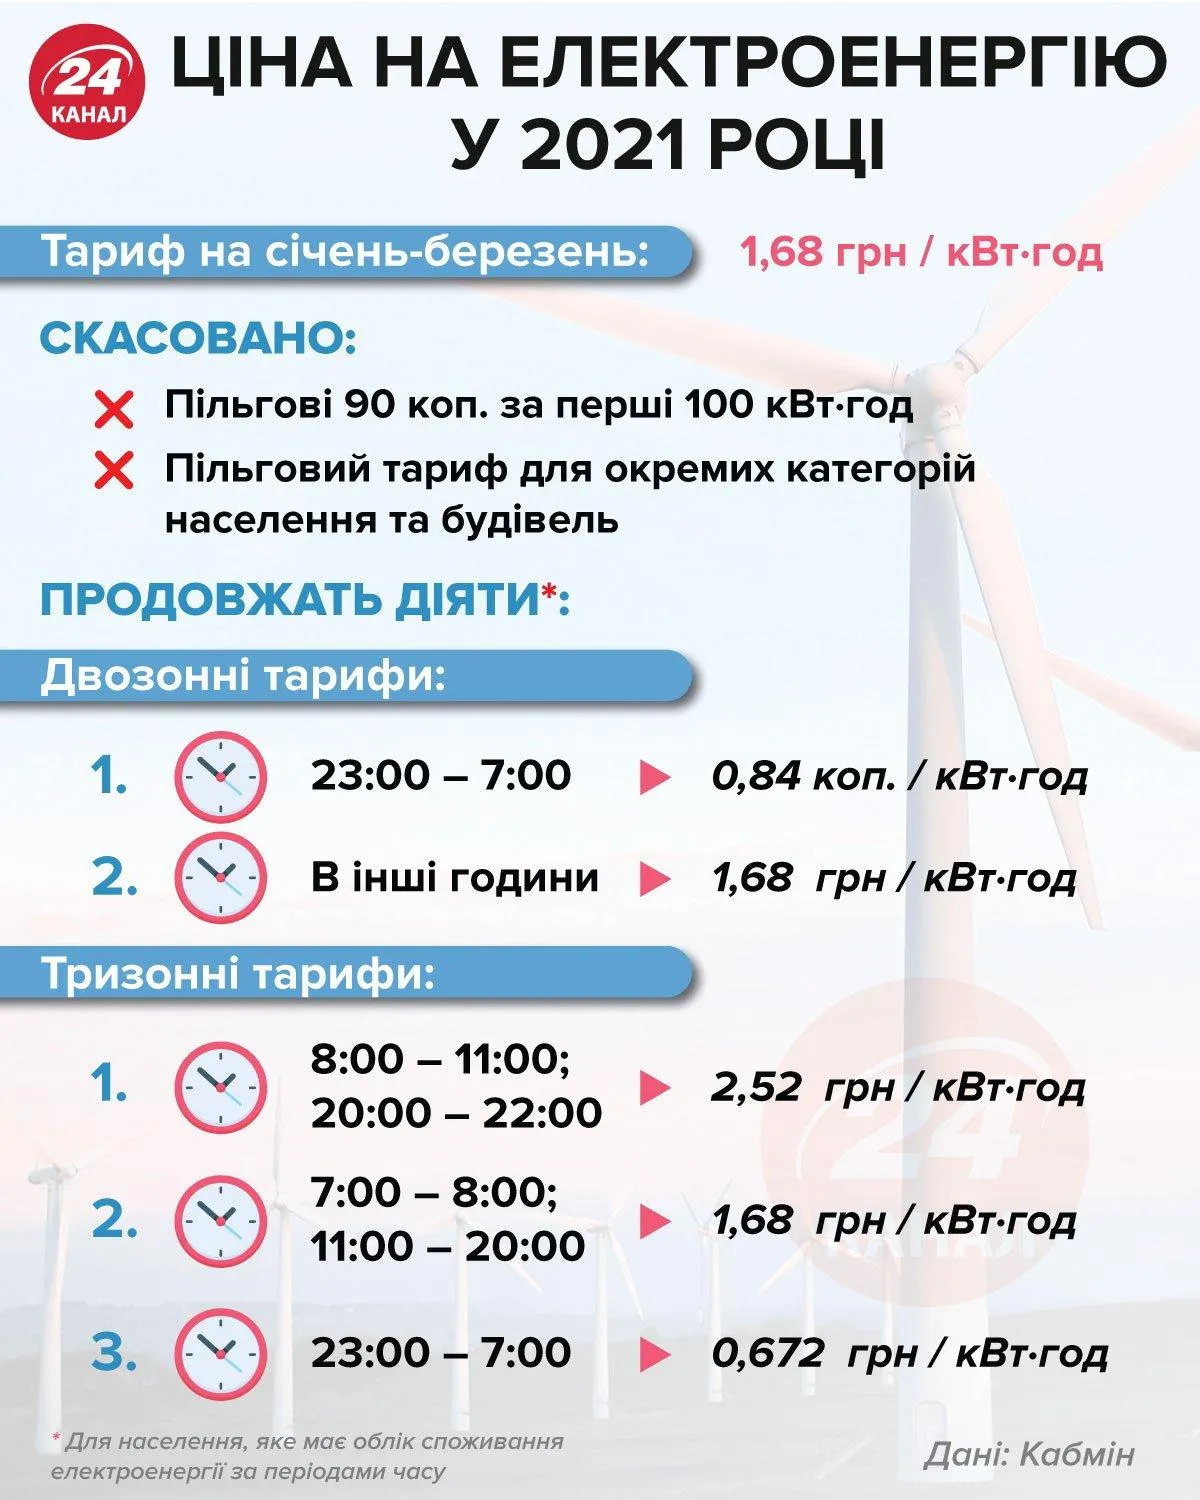 Головне про тарифи на електроенергію / Інфографіка 24 каналу